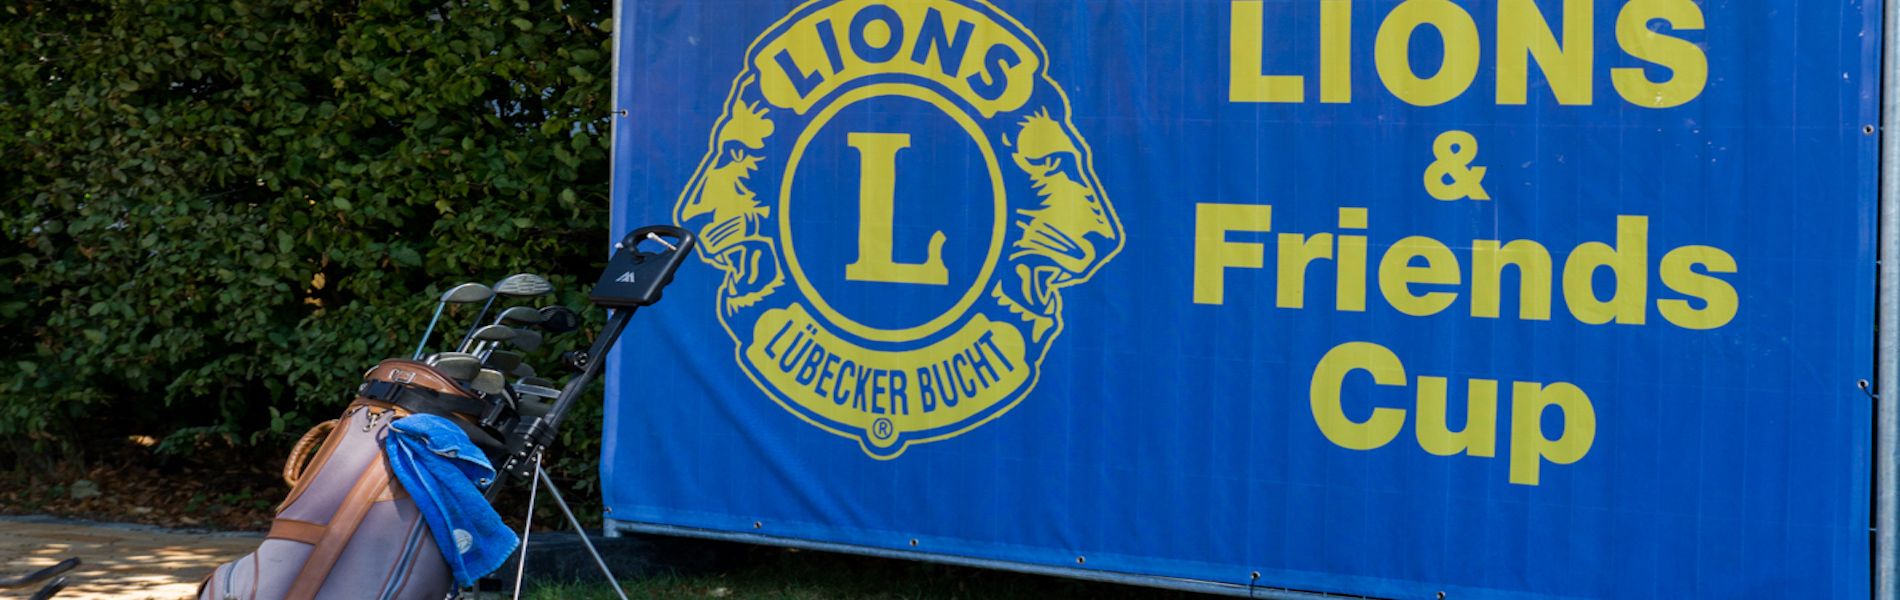 Lionsclub Lübecker Bucht Lions & Friends